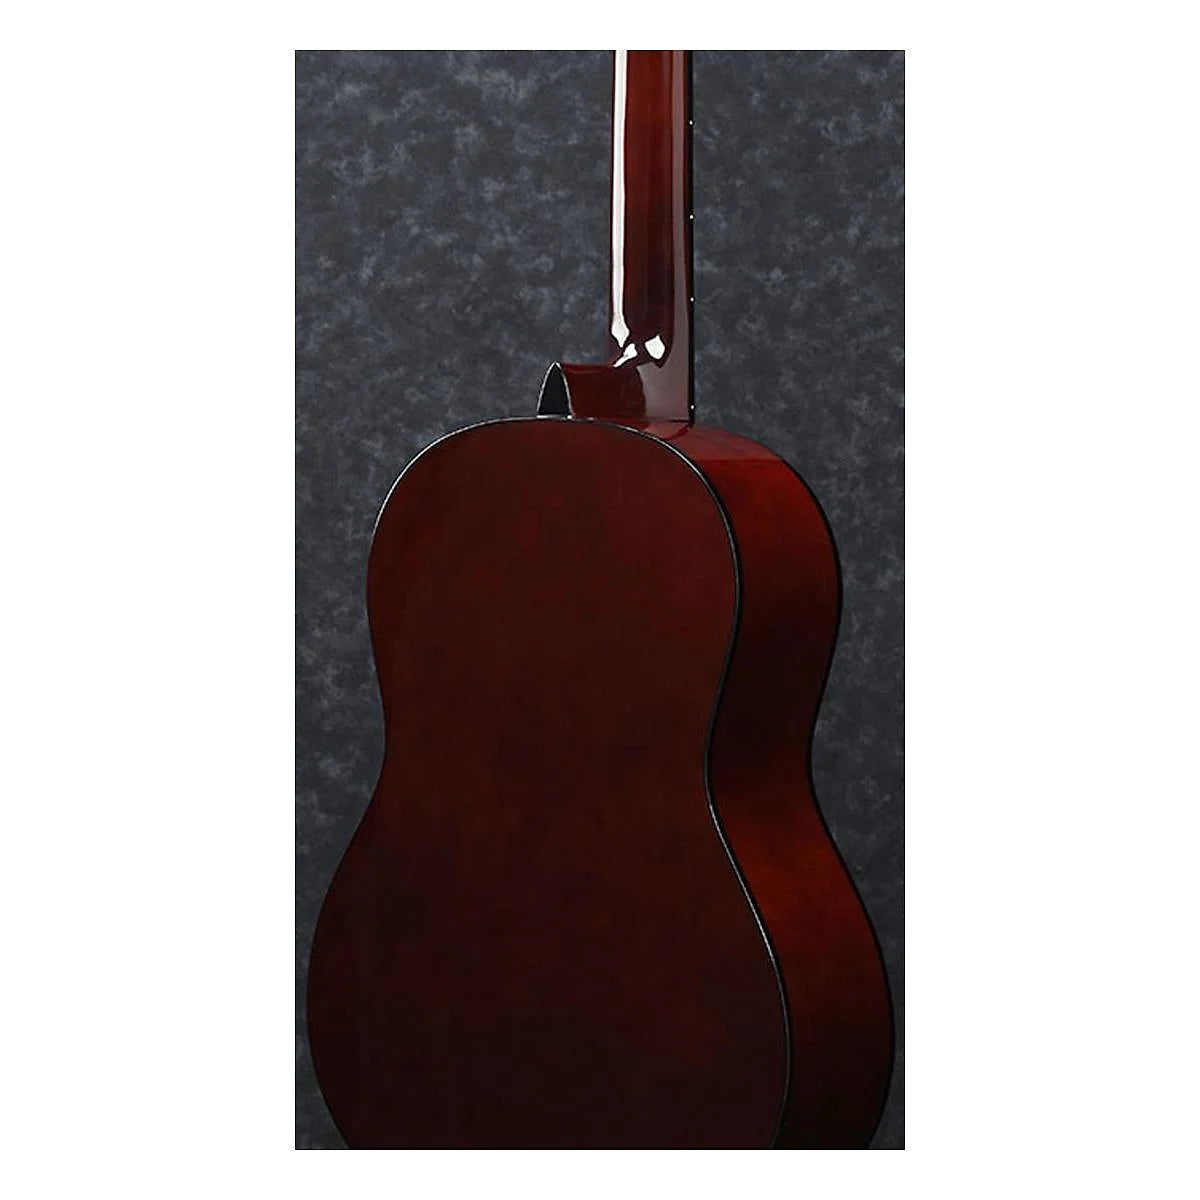 Ibanez Classical Series GA3 Acoustic Guitar